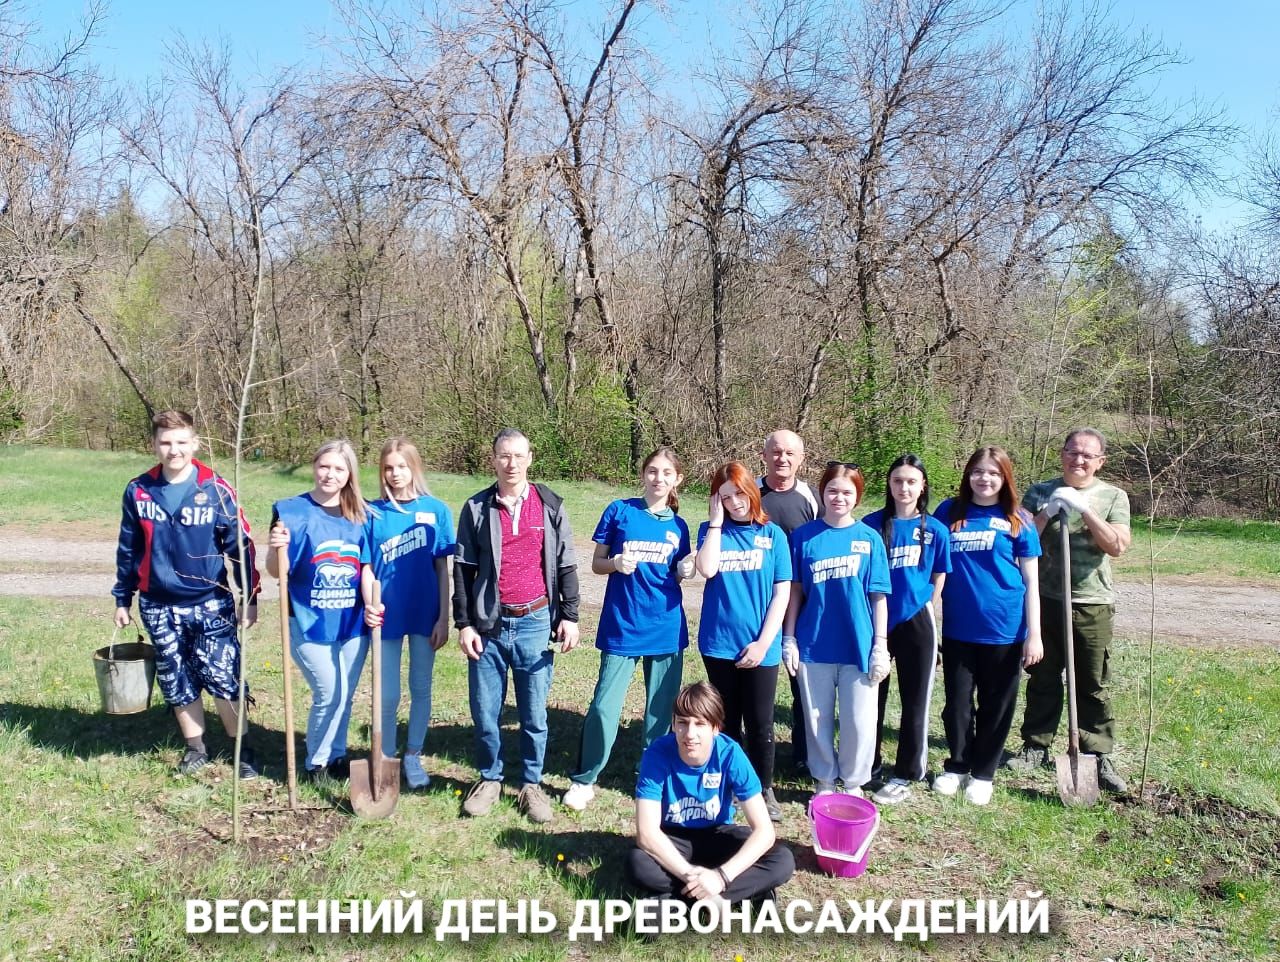 13 апреля в Миллерово были проведены весенний День древонасаждений  и Международная акция «Сад памяти»